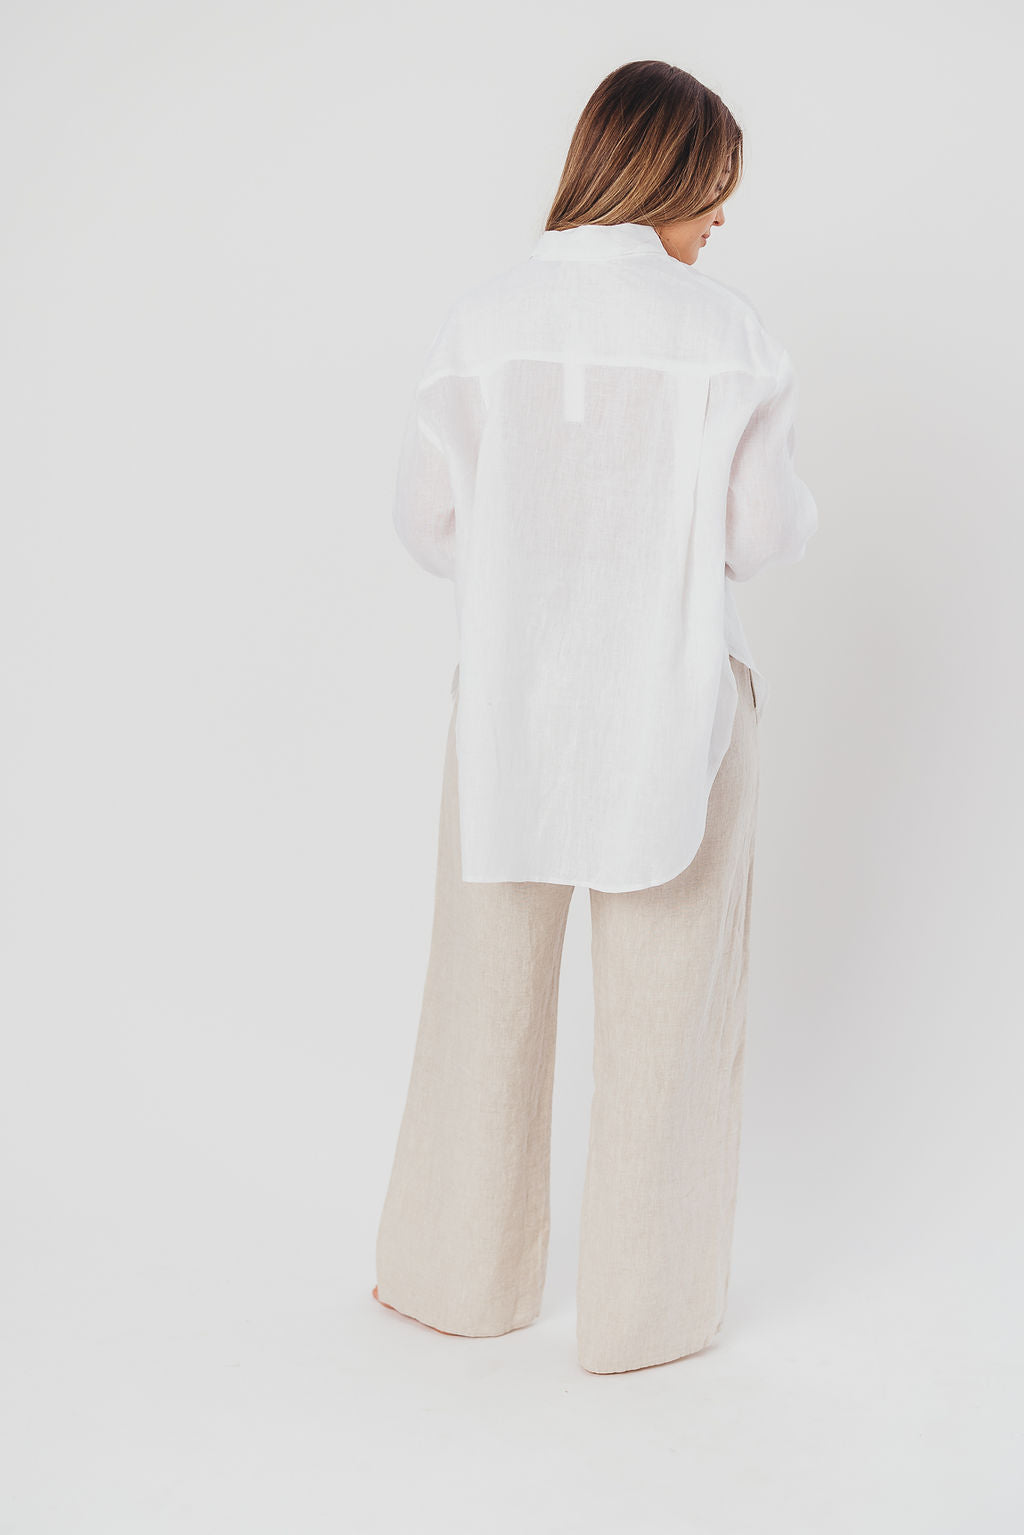 Helen 100% Linen Shirt in White - Nursing Friendly